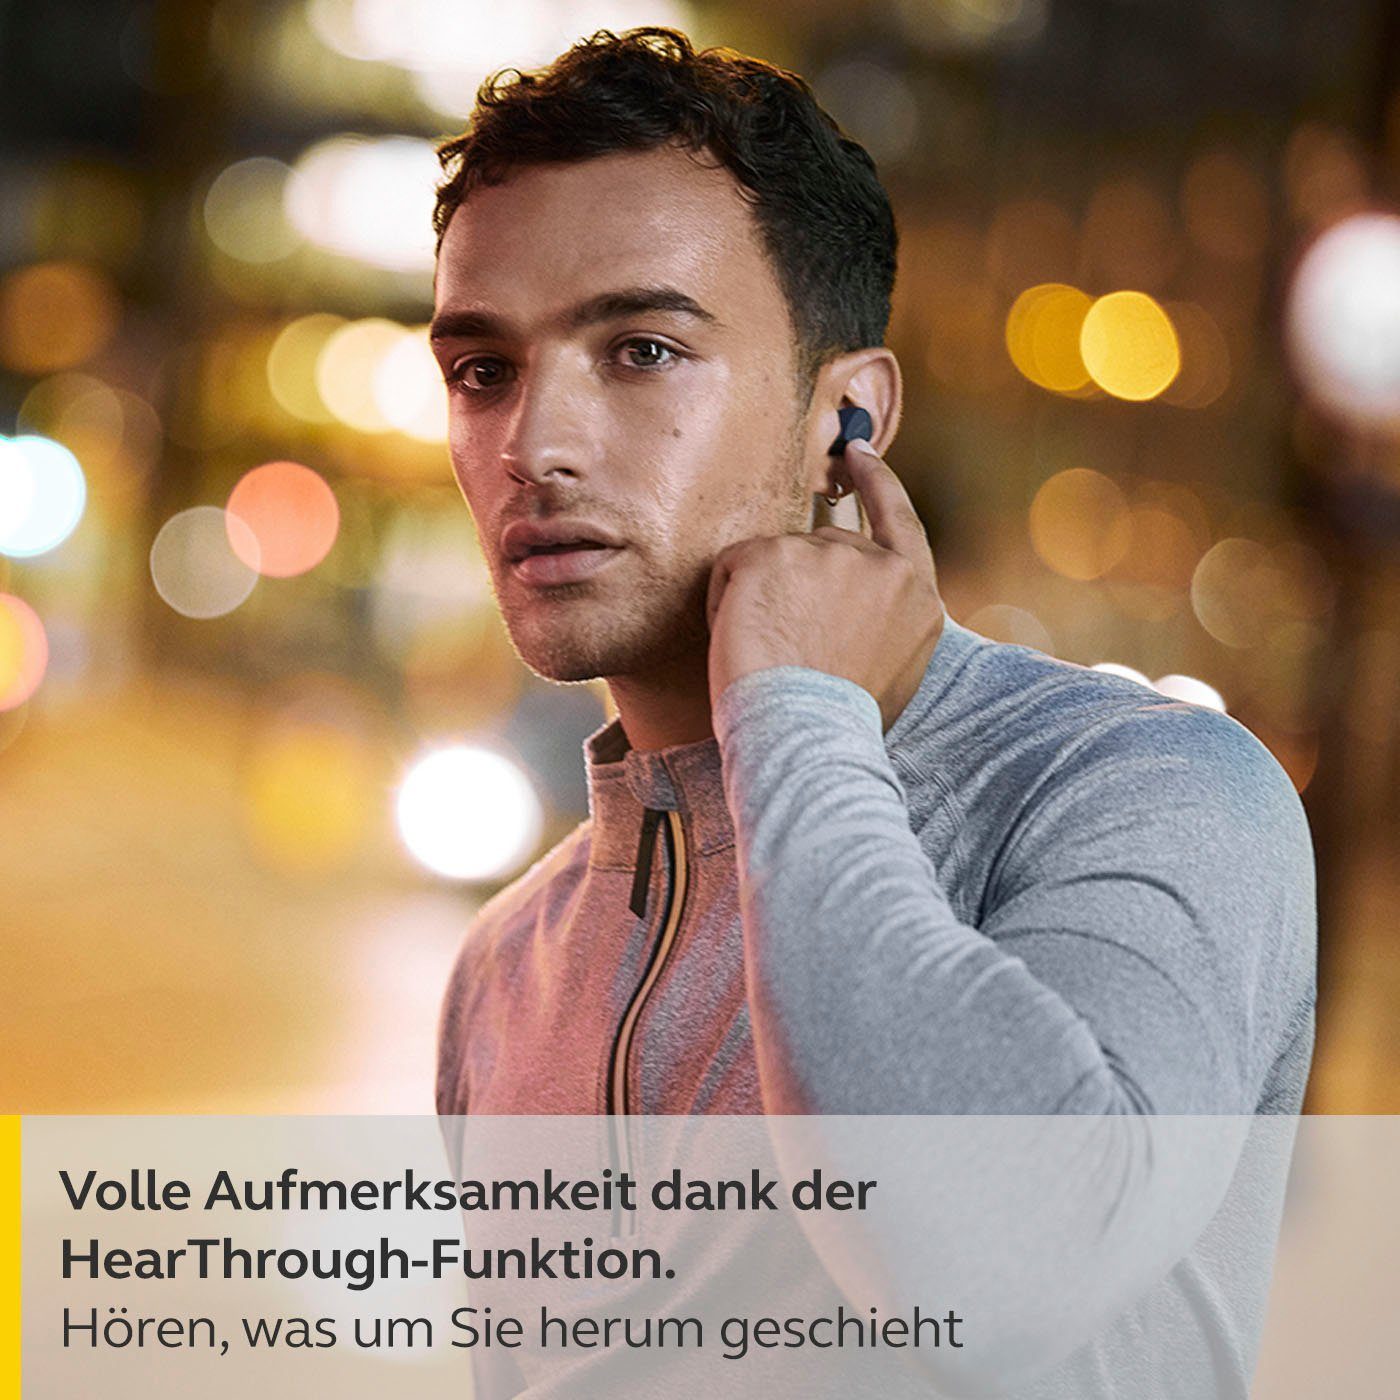 Jabra Elite 4 active Bluetooth-Kopfhörer Freisprechfunktion, Steuerung Alexa, Sprachsteuerung, Wireless, und Musik, Assistant, (Active True Siri, blau integrierte Noise (ANC), Anrufe Bluetooth) Cancelling Google für